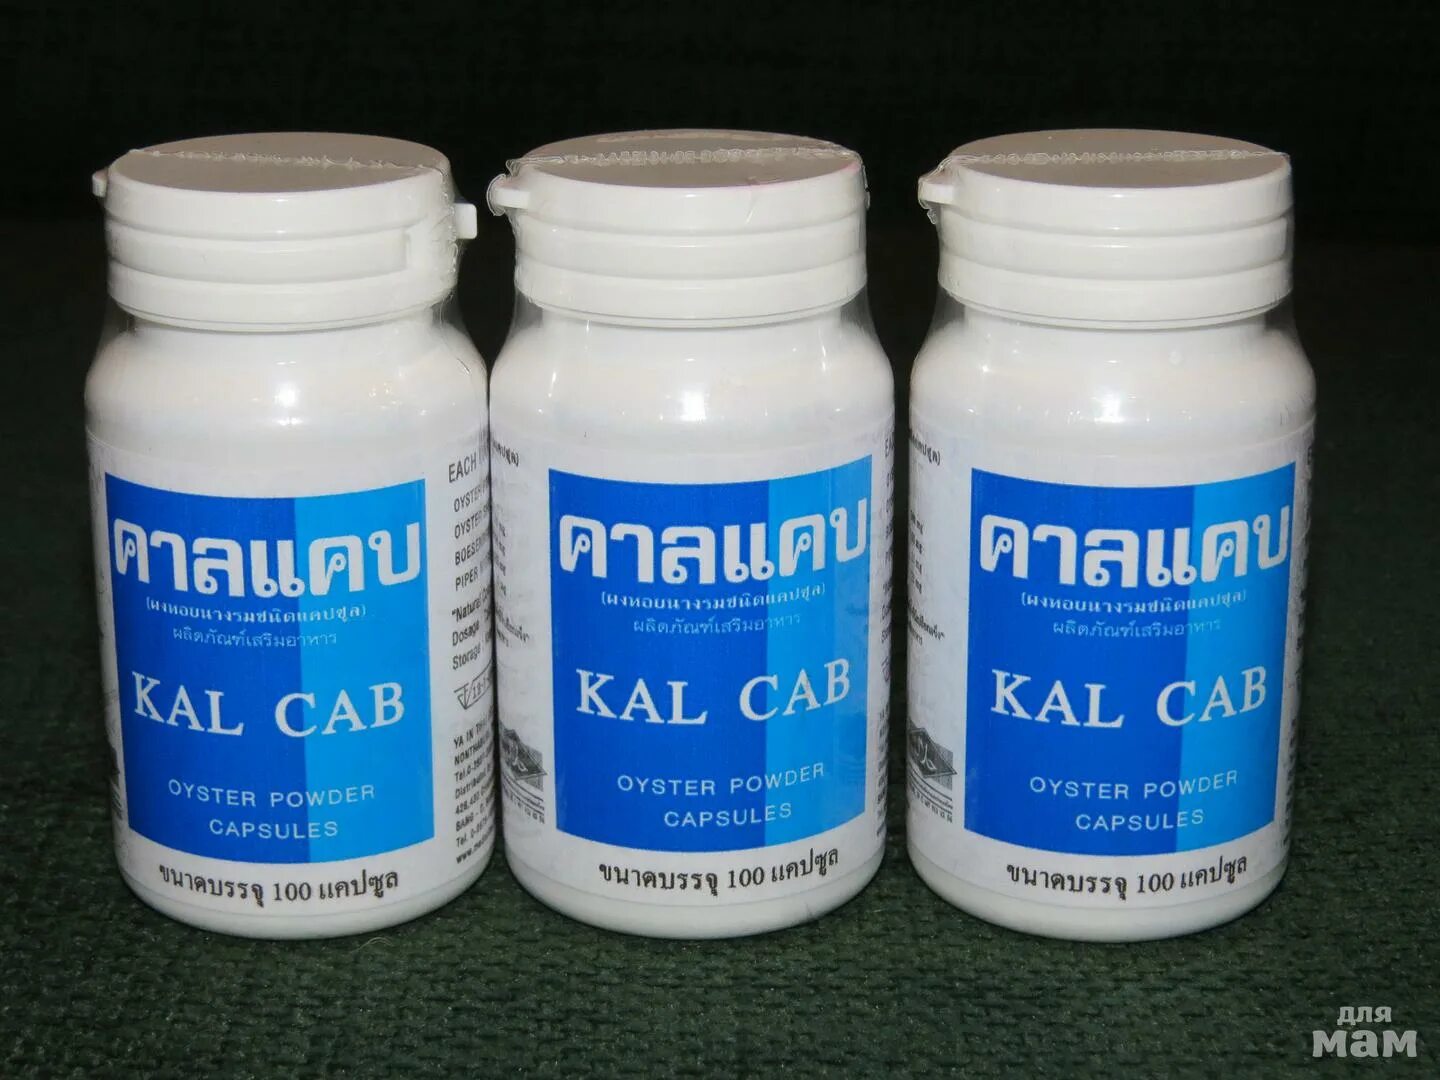 Устричный кальций "Kal Cab". Устричный кальций "Kal Cab" 100 капсул. Устричный кальций в капсулах Kal Cab. Устричный кальций из Тайланда.